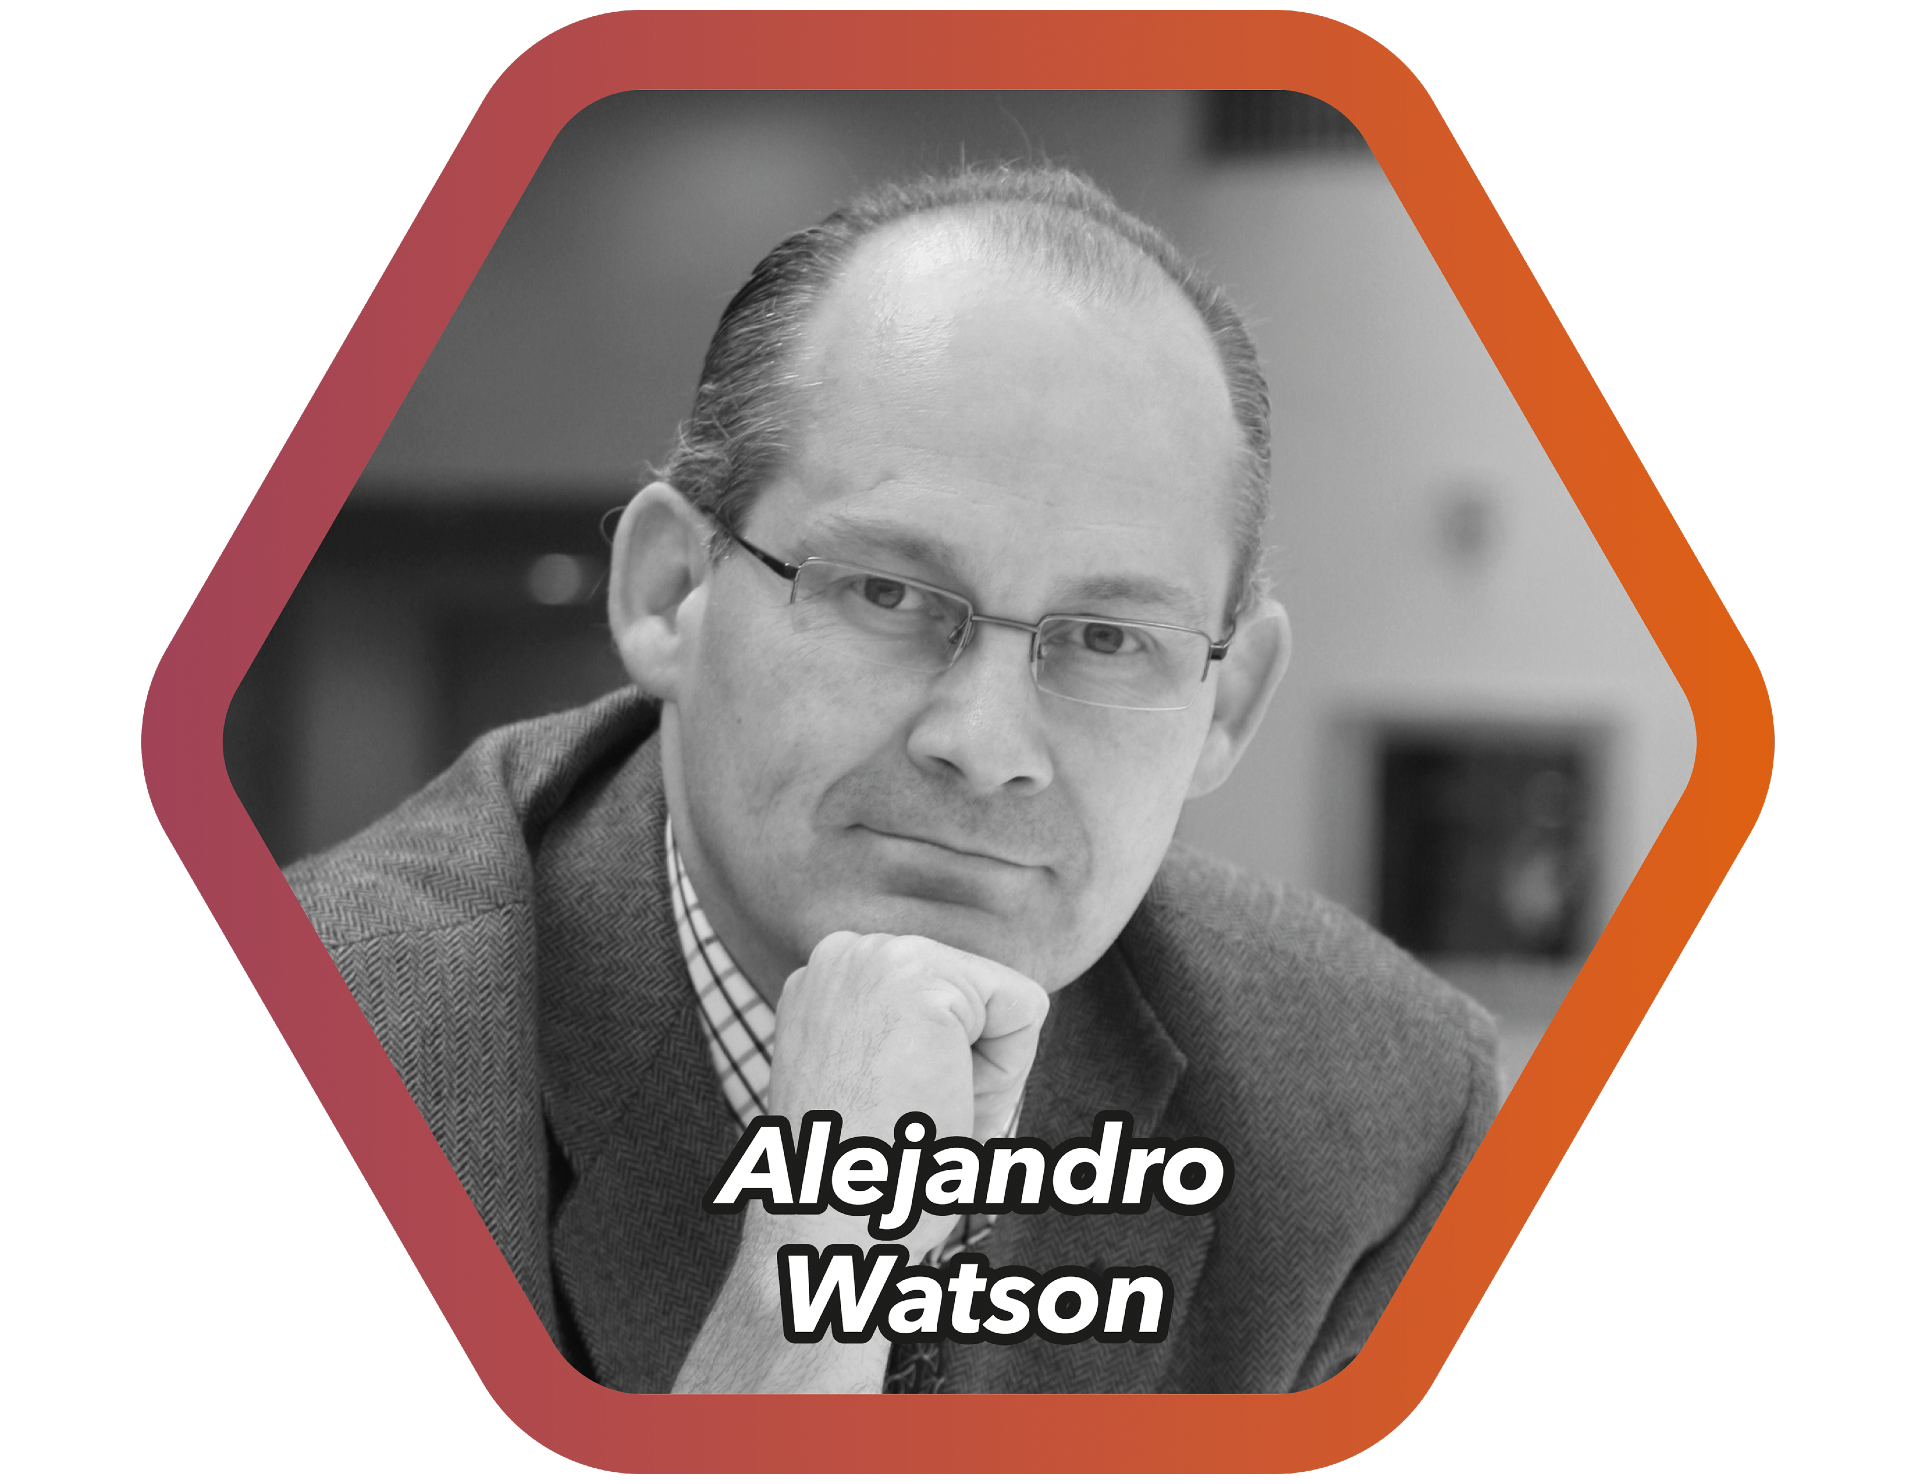 Alejandro Watson